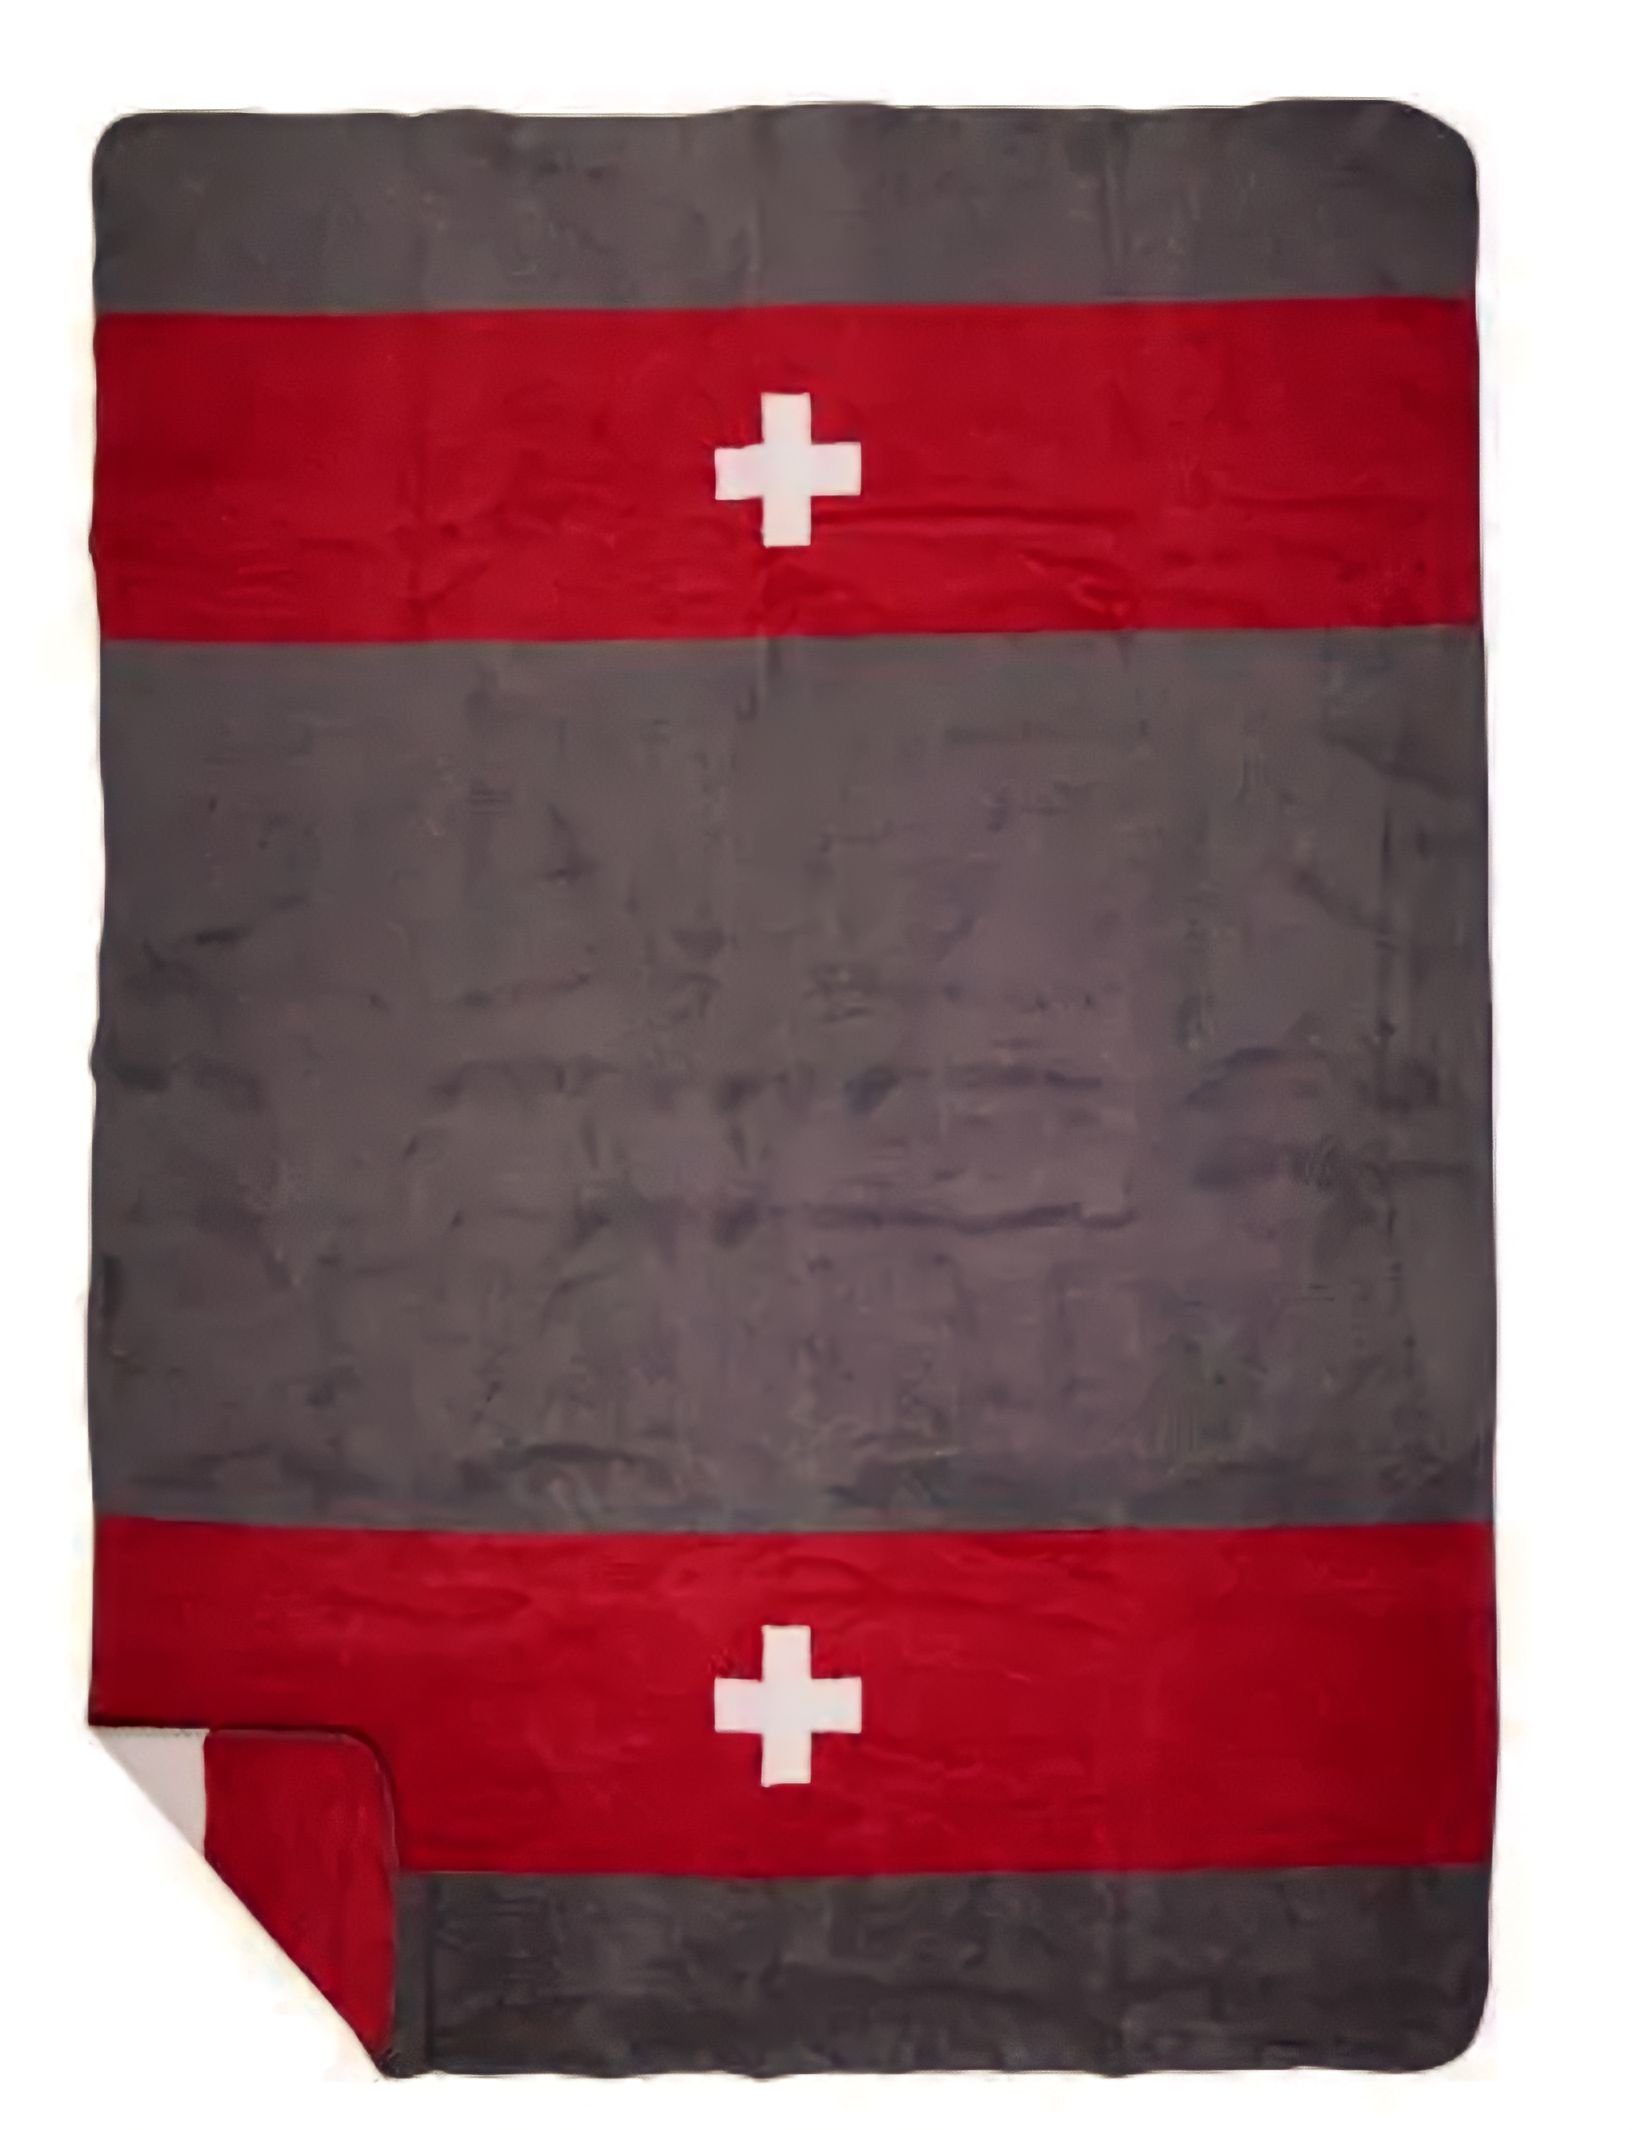 & Rot Hüttenstil, Motiv Grau Wohn Schweiz Mars Schweiz More Kreuz Wohndecke Decke Sofa & Mars More,